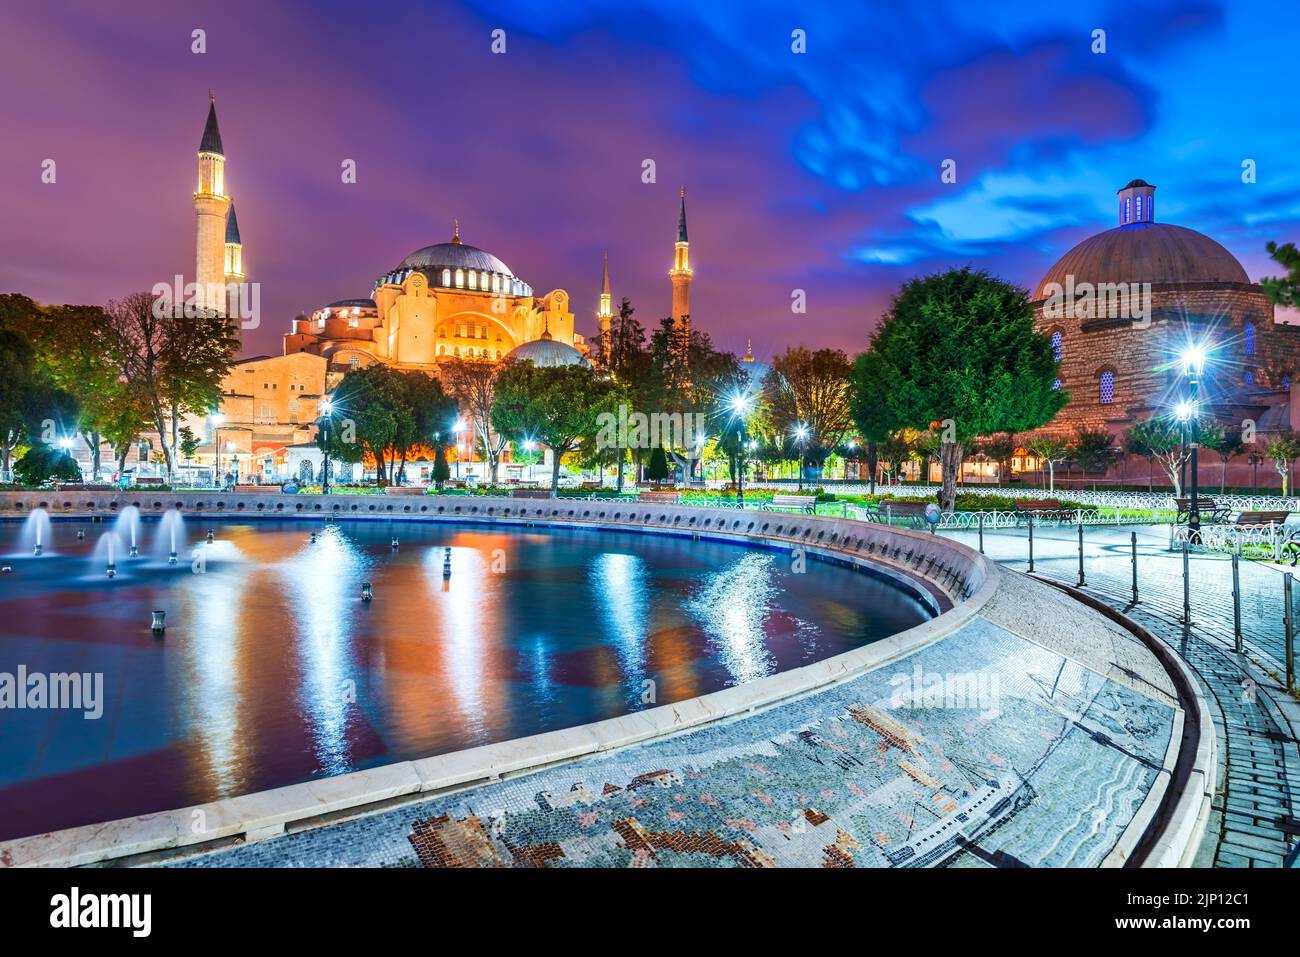 Estambul, Turquía. Famosa mezquita Hagia Sophia y minaretes Constantinopla histórica, el centro de Sultanahmet, lugar de viaje escénico. Foto de stock